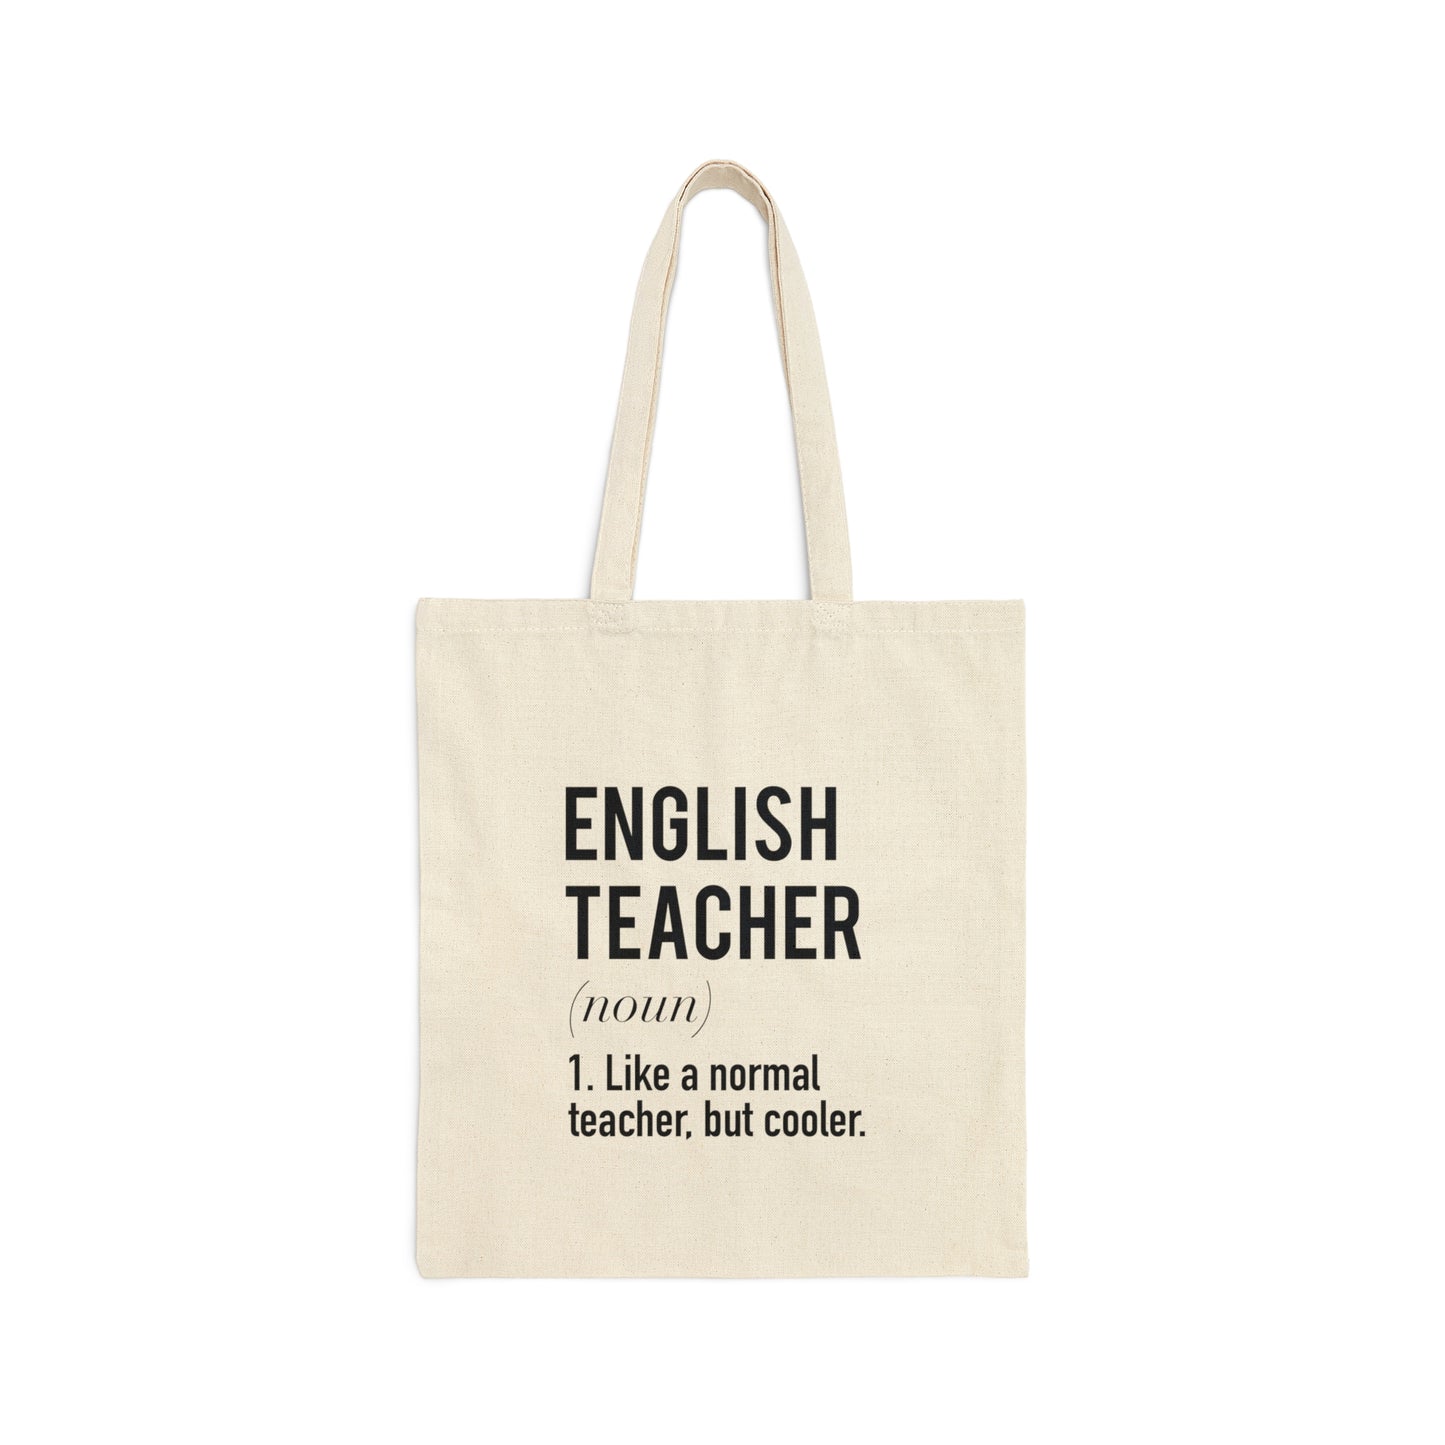 English Teacher Canvas Tote Bag